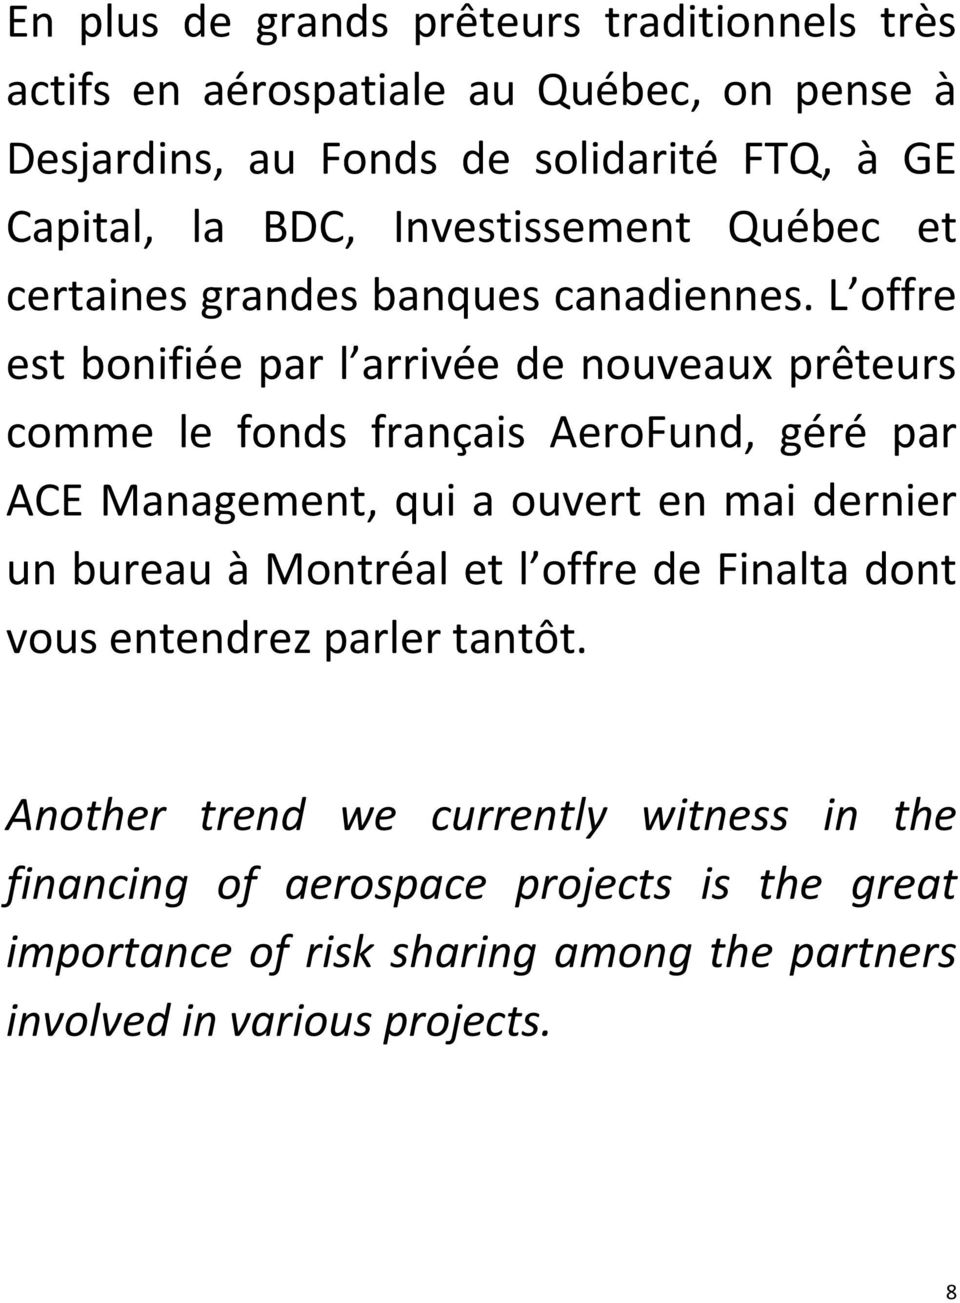 L offre est bonifiée par l arrivée de nouveaux prêteurs comme le fonds français AeroFund, géré par ACE Management, qui a ouvert en mai dernier un